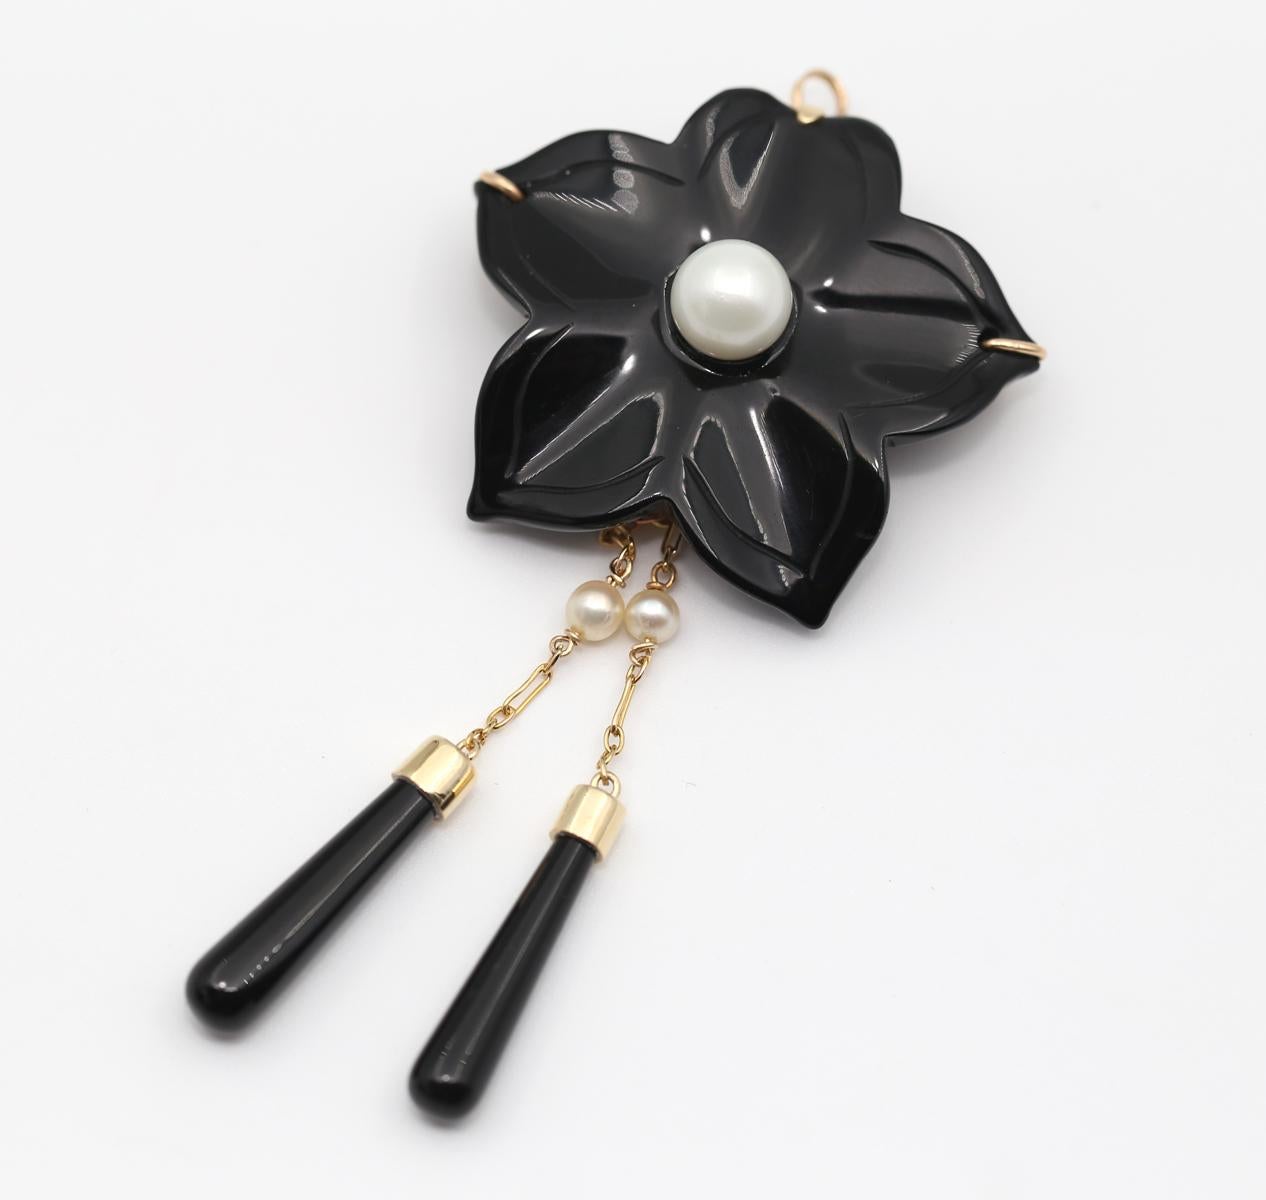 Broche fleur en onyx pendentif perles or 14K, 1930

Fleur d'onyx avec deux pendentifs détachables en perle et onyx. Or 14K. Créée vers les années 1930.

Un objet très fin et très élégant. Il peut être porté en broche ou en pendentif. Une boucle